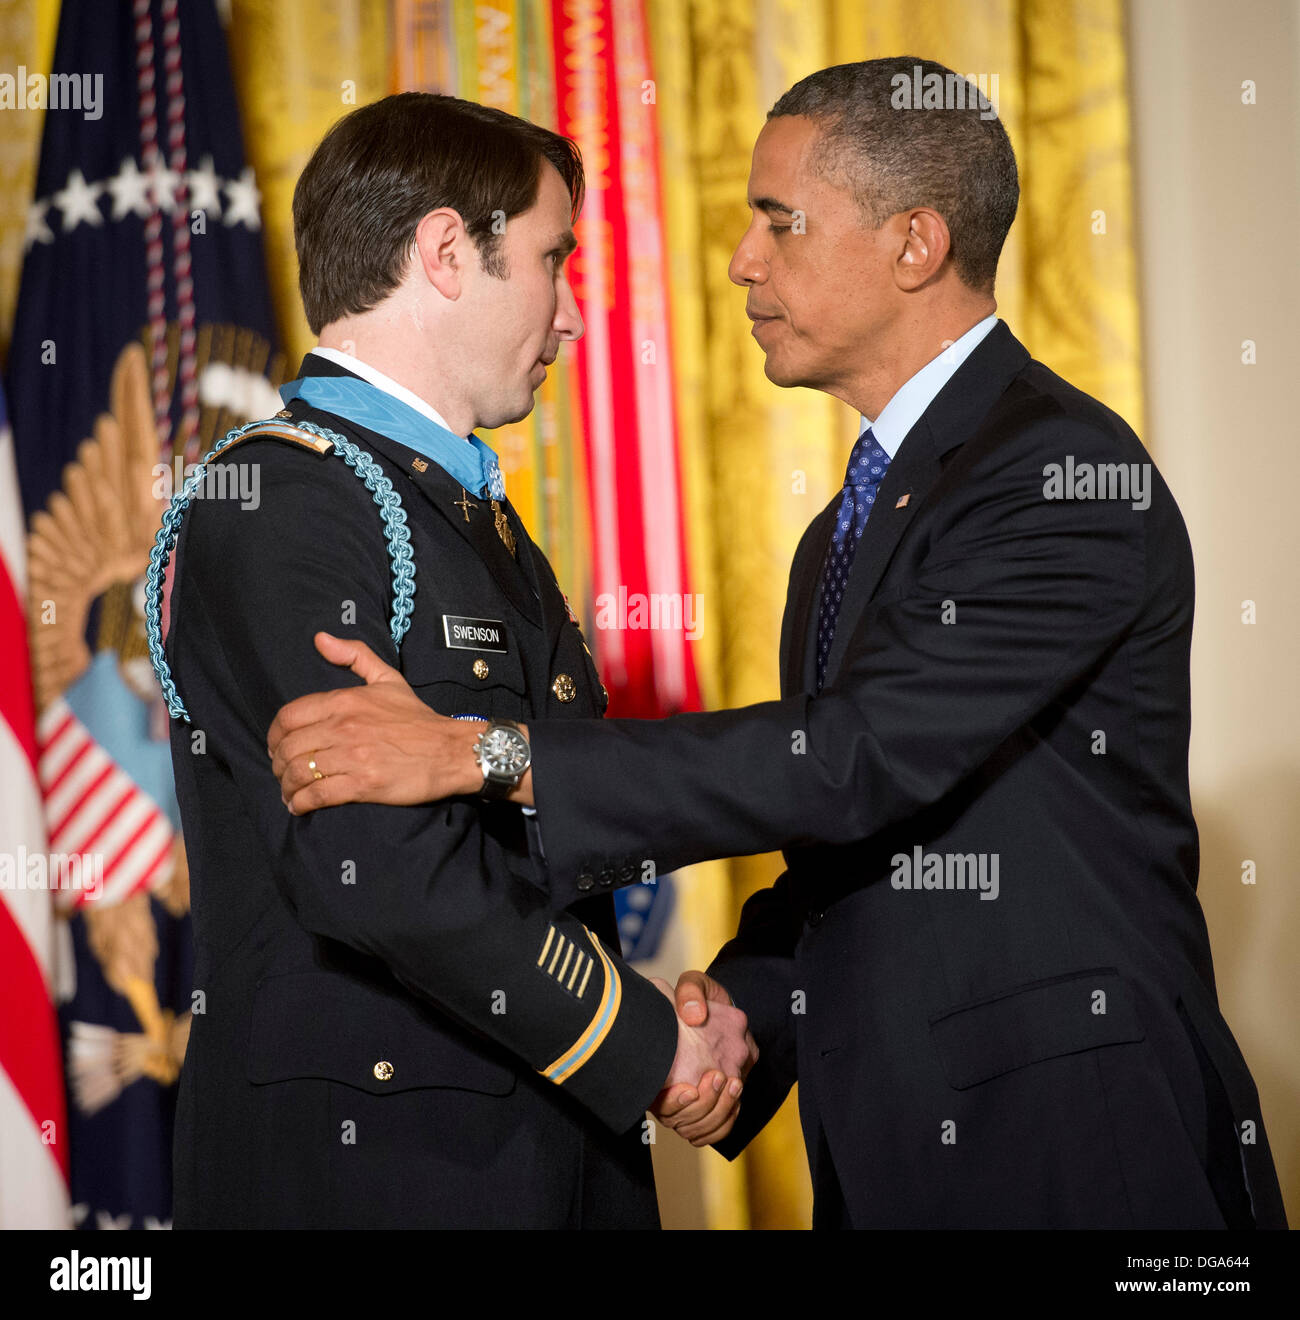 US-Präsident Barack Obama gratuliert ehemaligen Army Captain William D. Swenson nach ihm mit der Medal Of Honor zu präsentieren, während einer Zeremonie im East Room des weißen Hauses 15. Oktober 2013 in Washington, DC. Die Medal Of Honor ist die höchste militärische Auszeichnung des Landes. Stockfoto